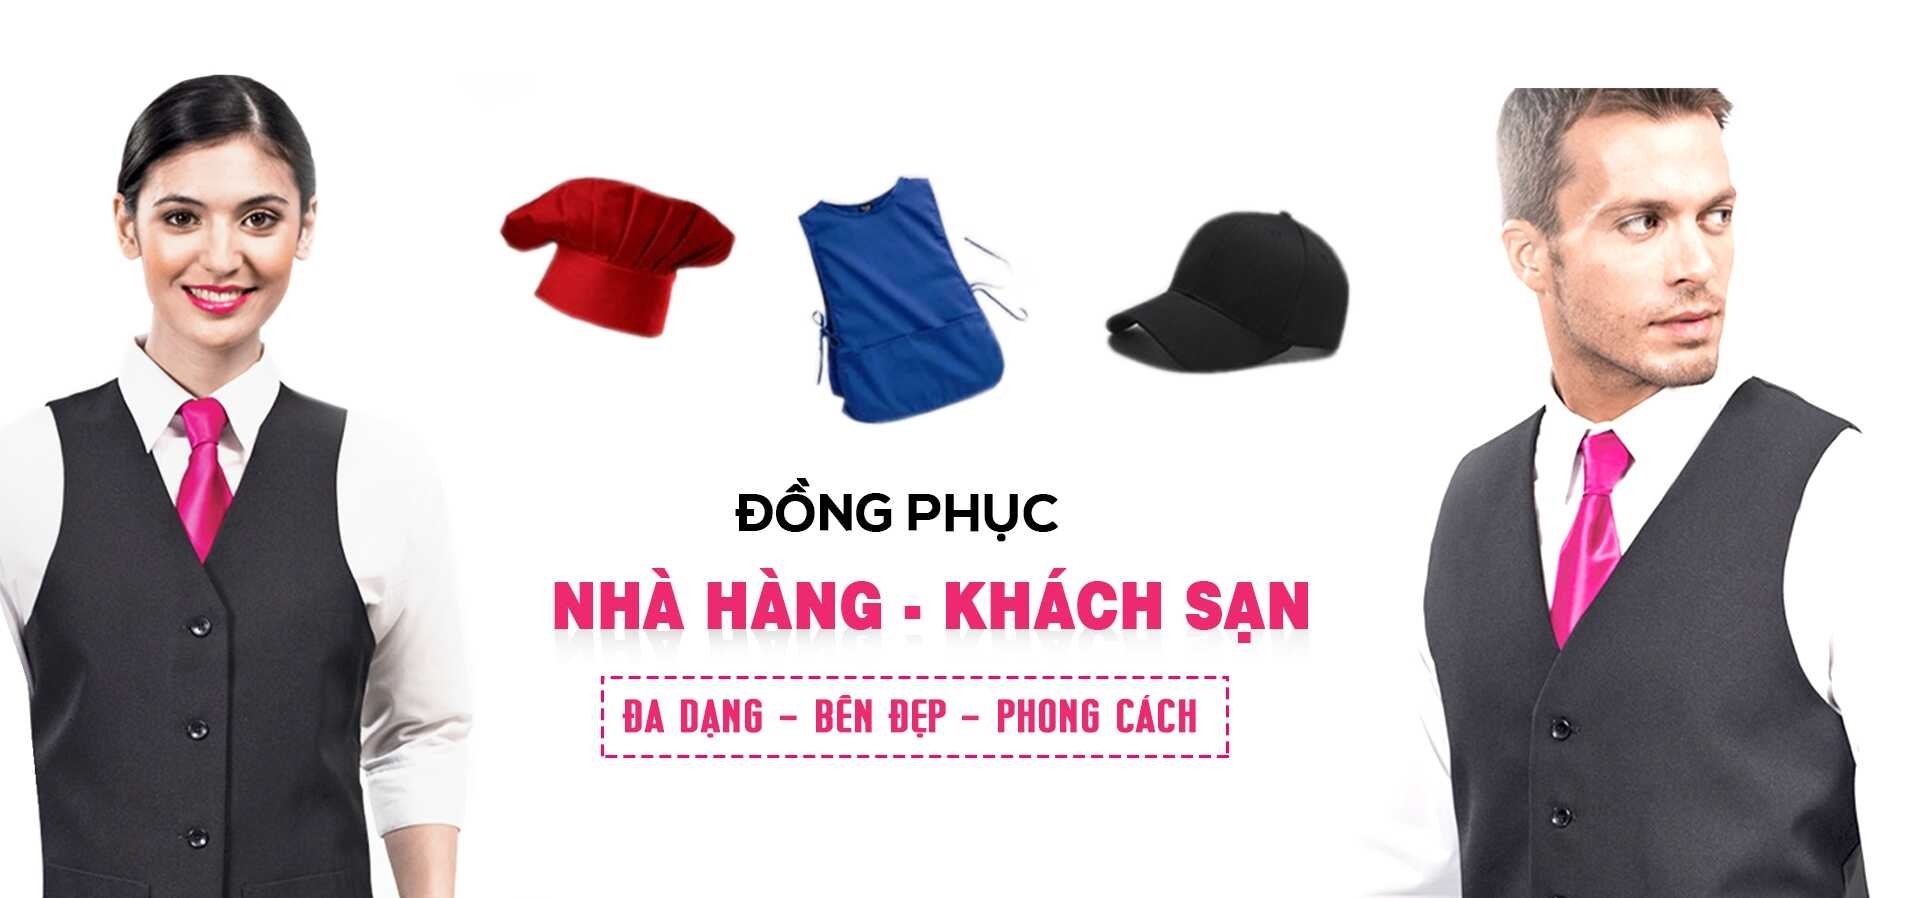 HINH ANH DONG PHUC NHA HANG